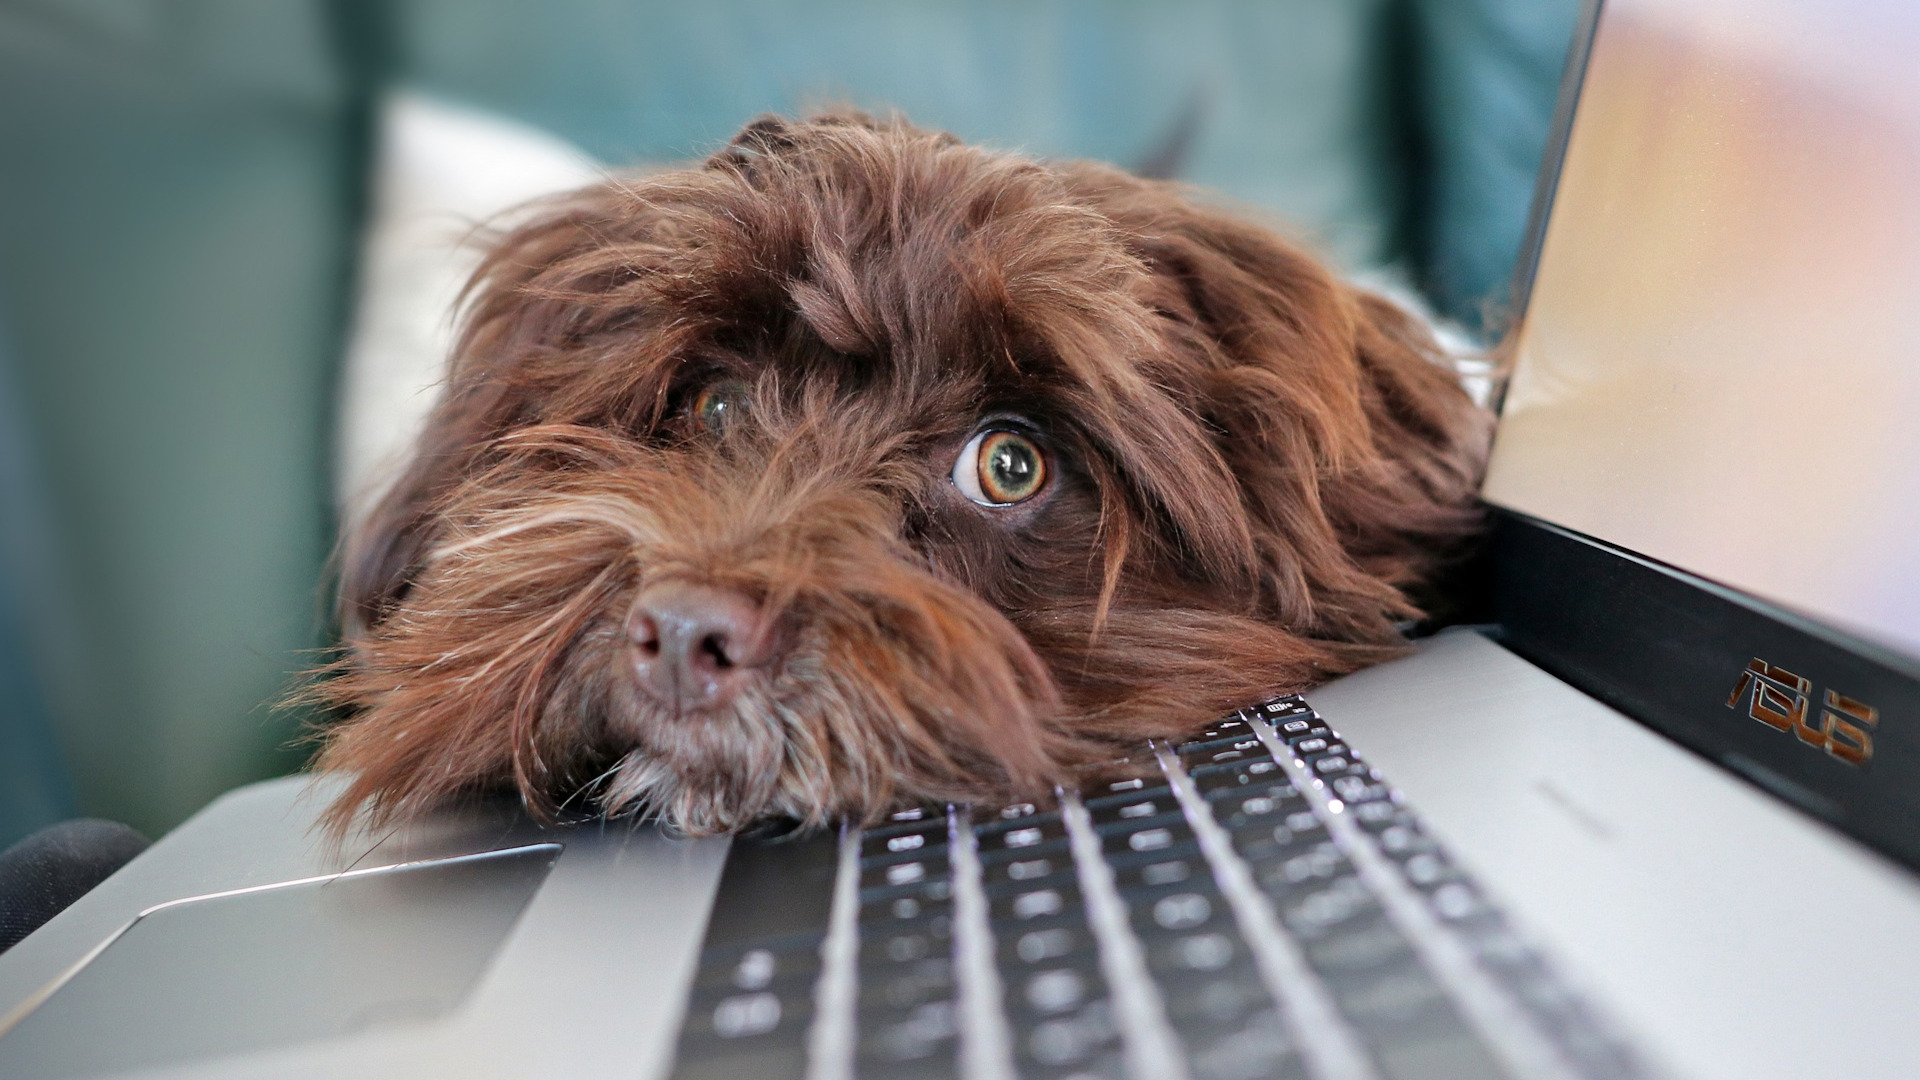 a dog resting on a keyboard